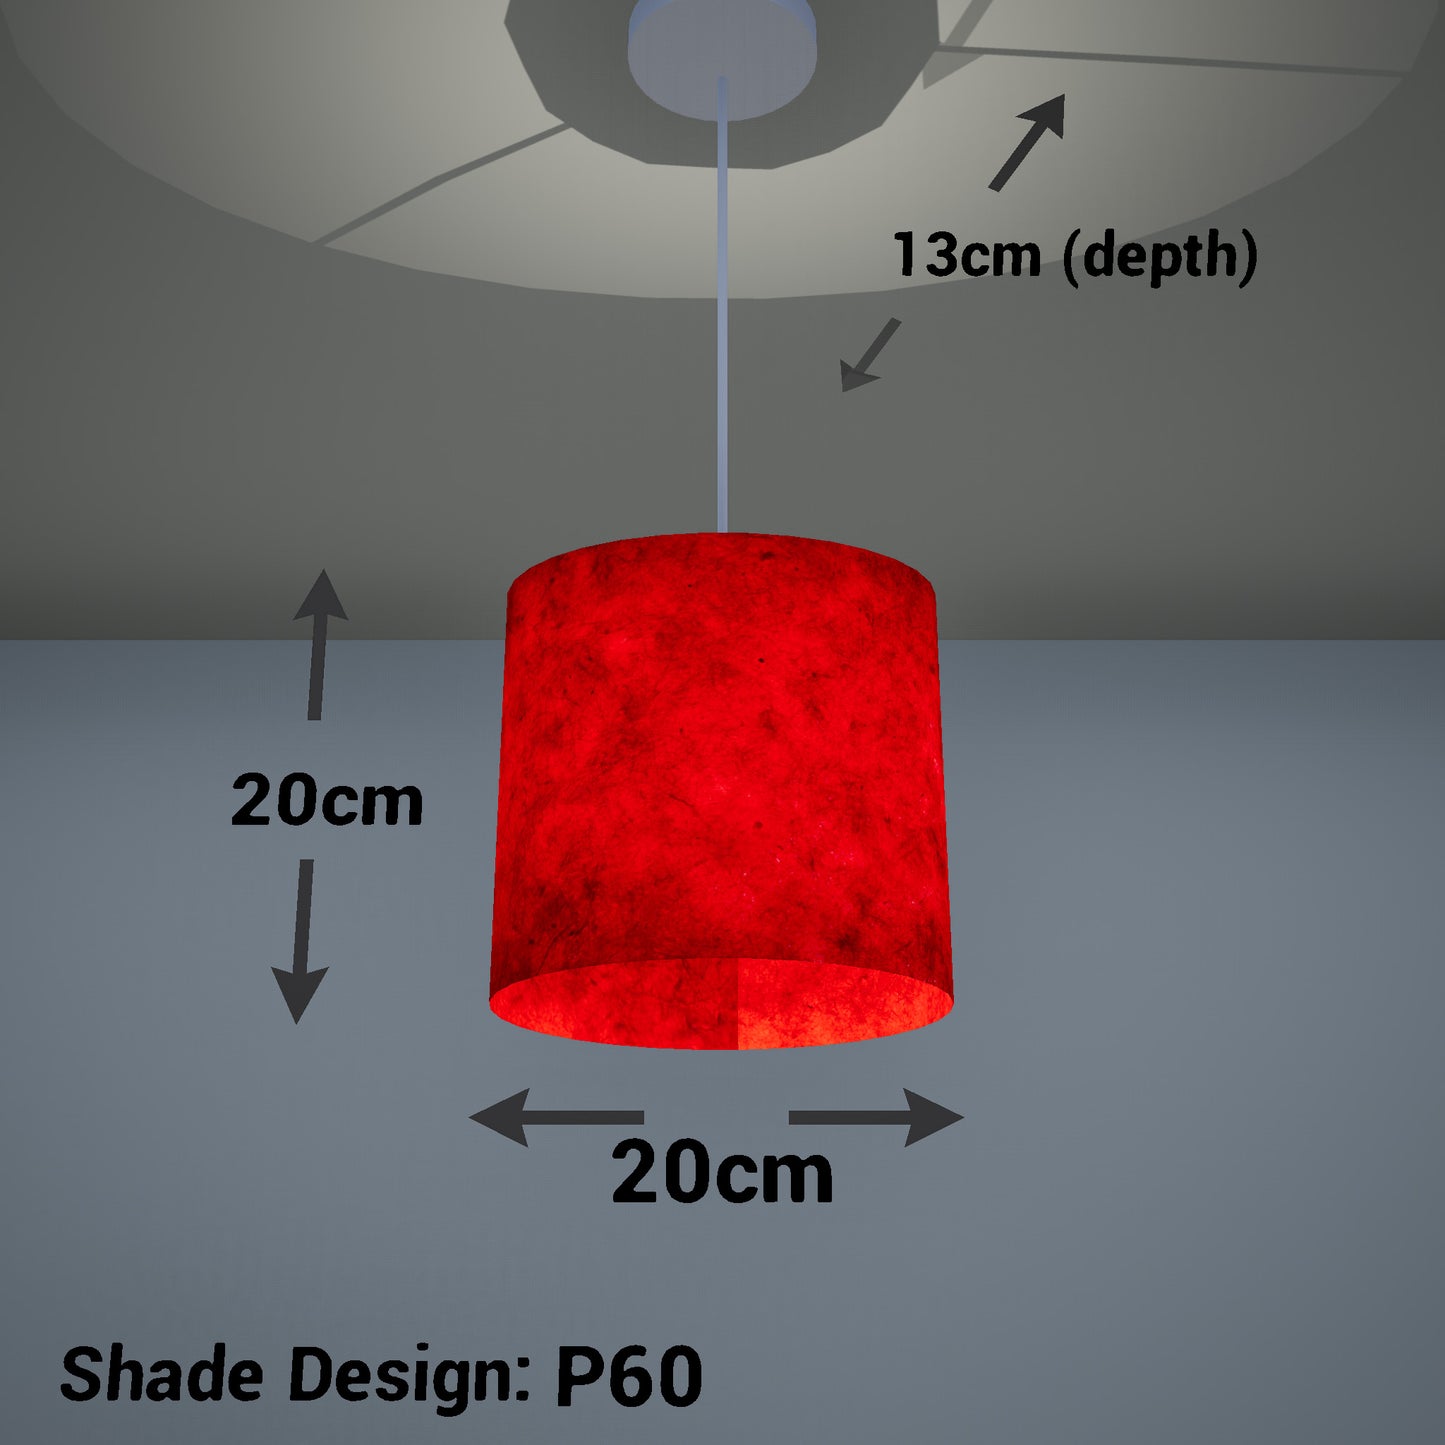 Oval Lamp Shade - P60 - Red Lokta, 20cm(w) x 20cm(h) x 13cm(d)